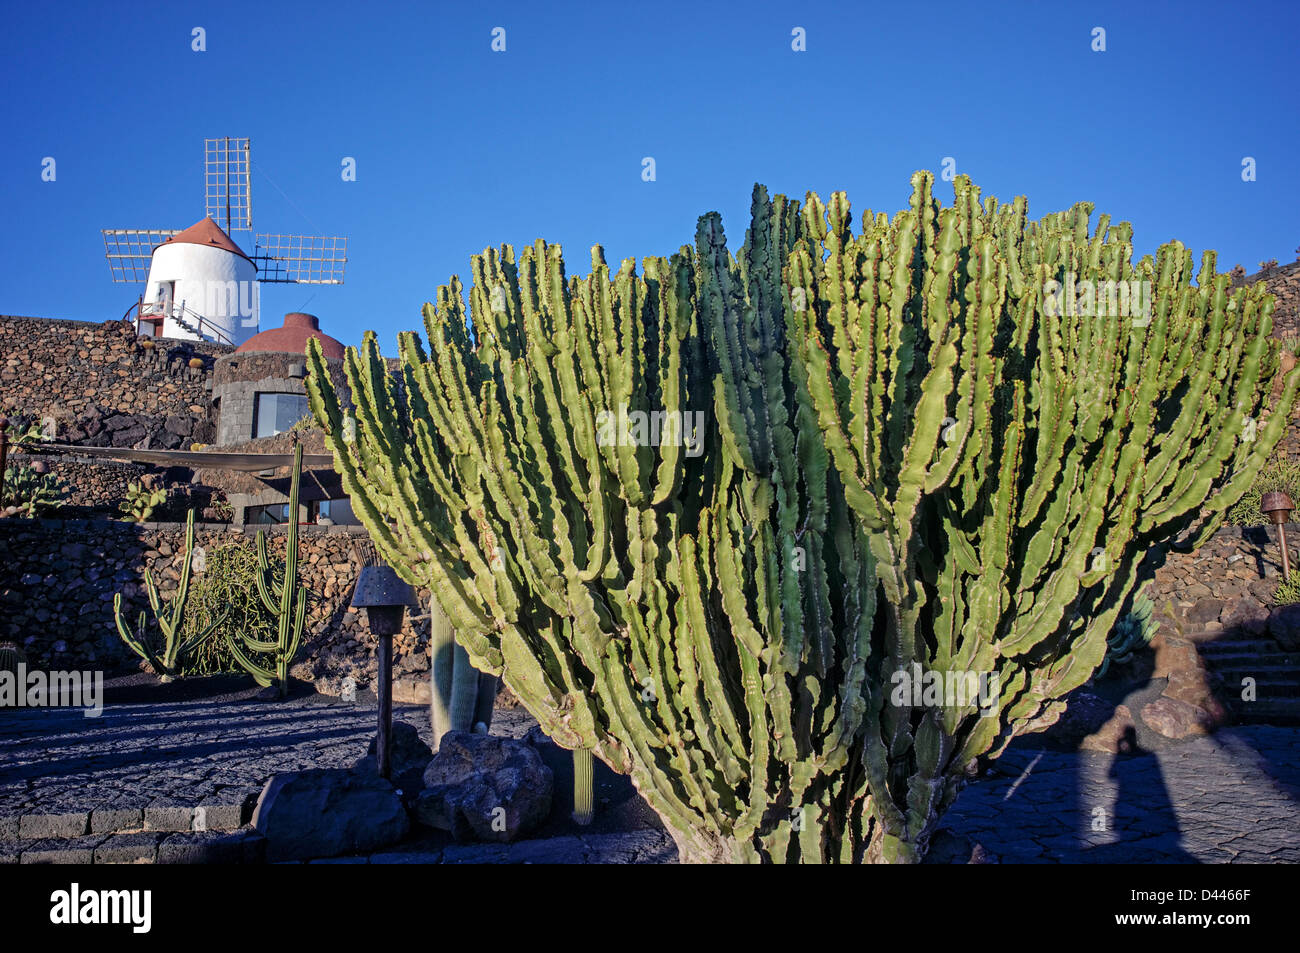 Jardín de Cactus (Cactus Garden), Guatiza, Lanzarote, Islas Canarias, España Foto de stock